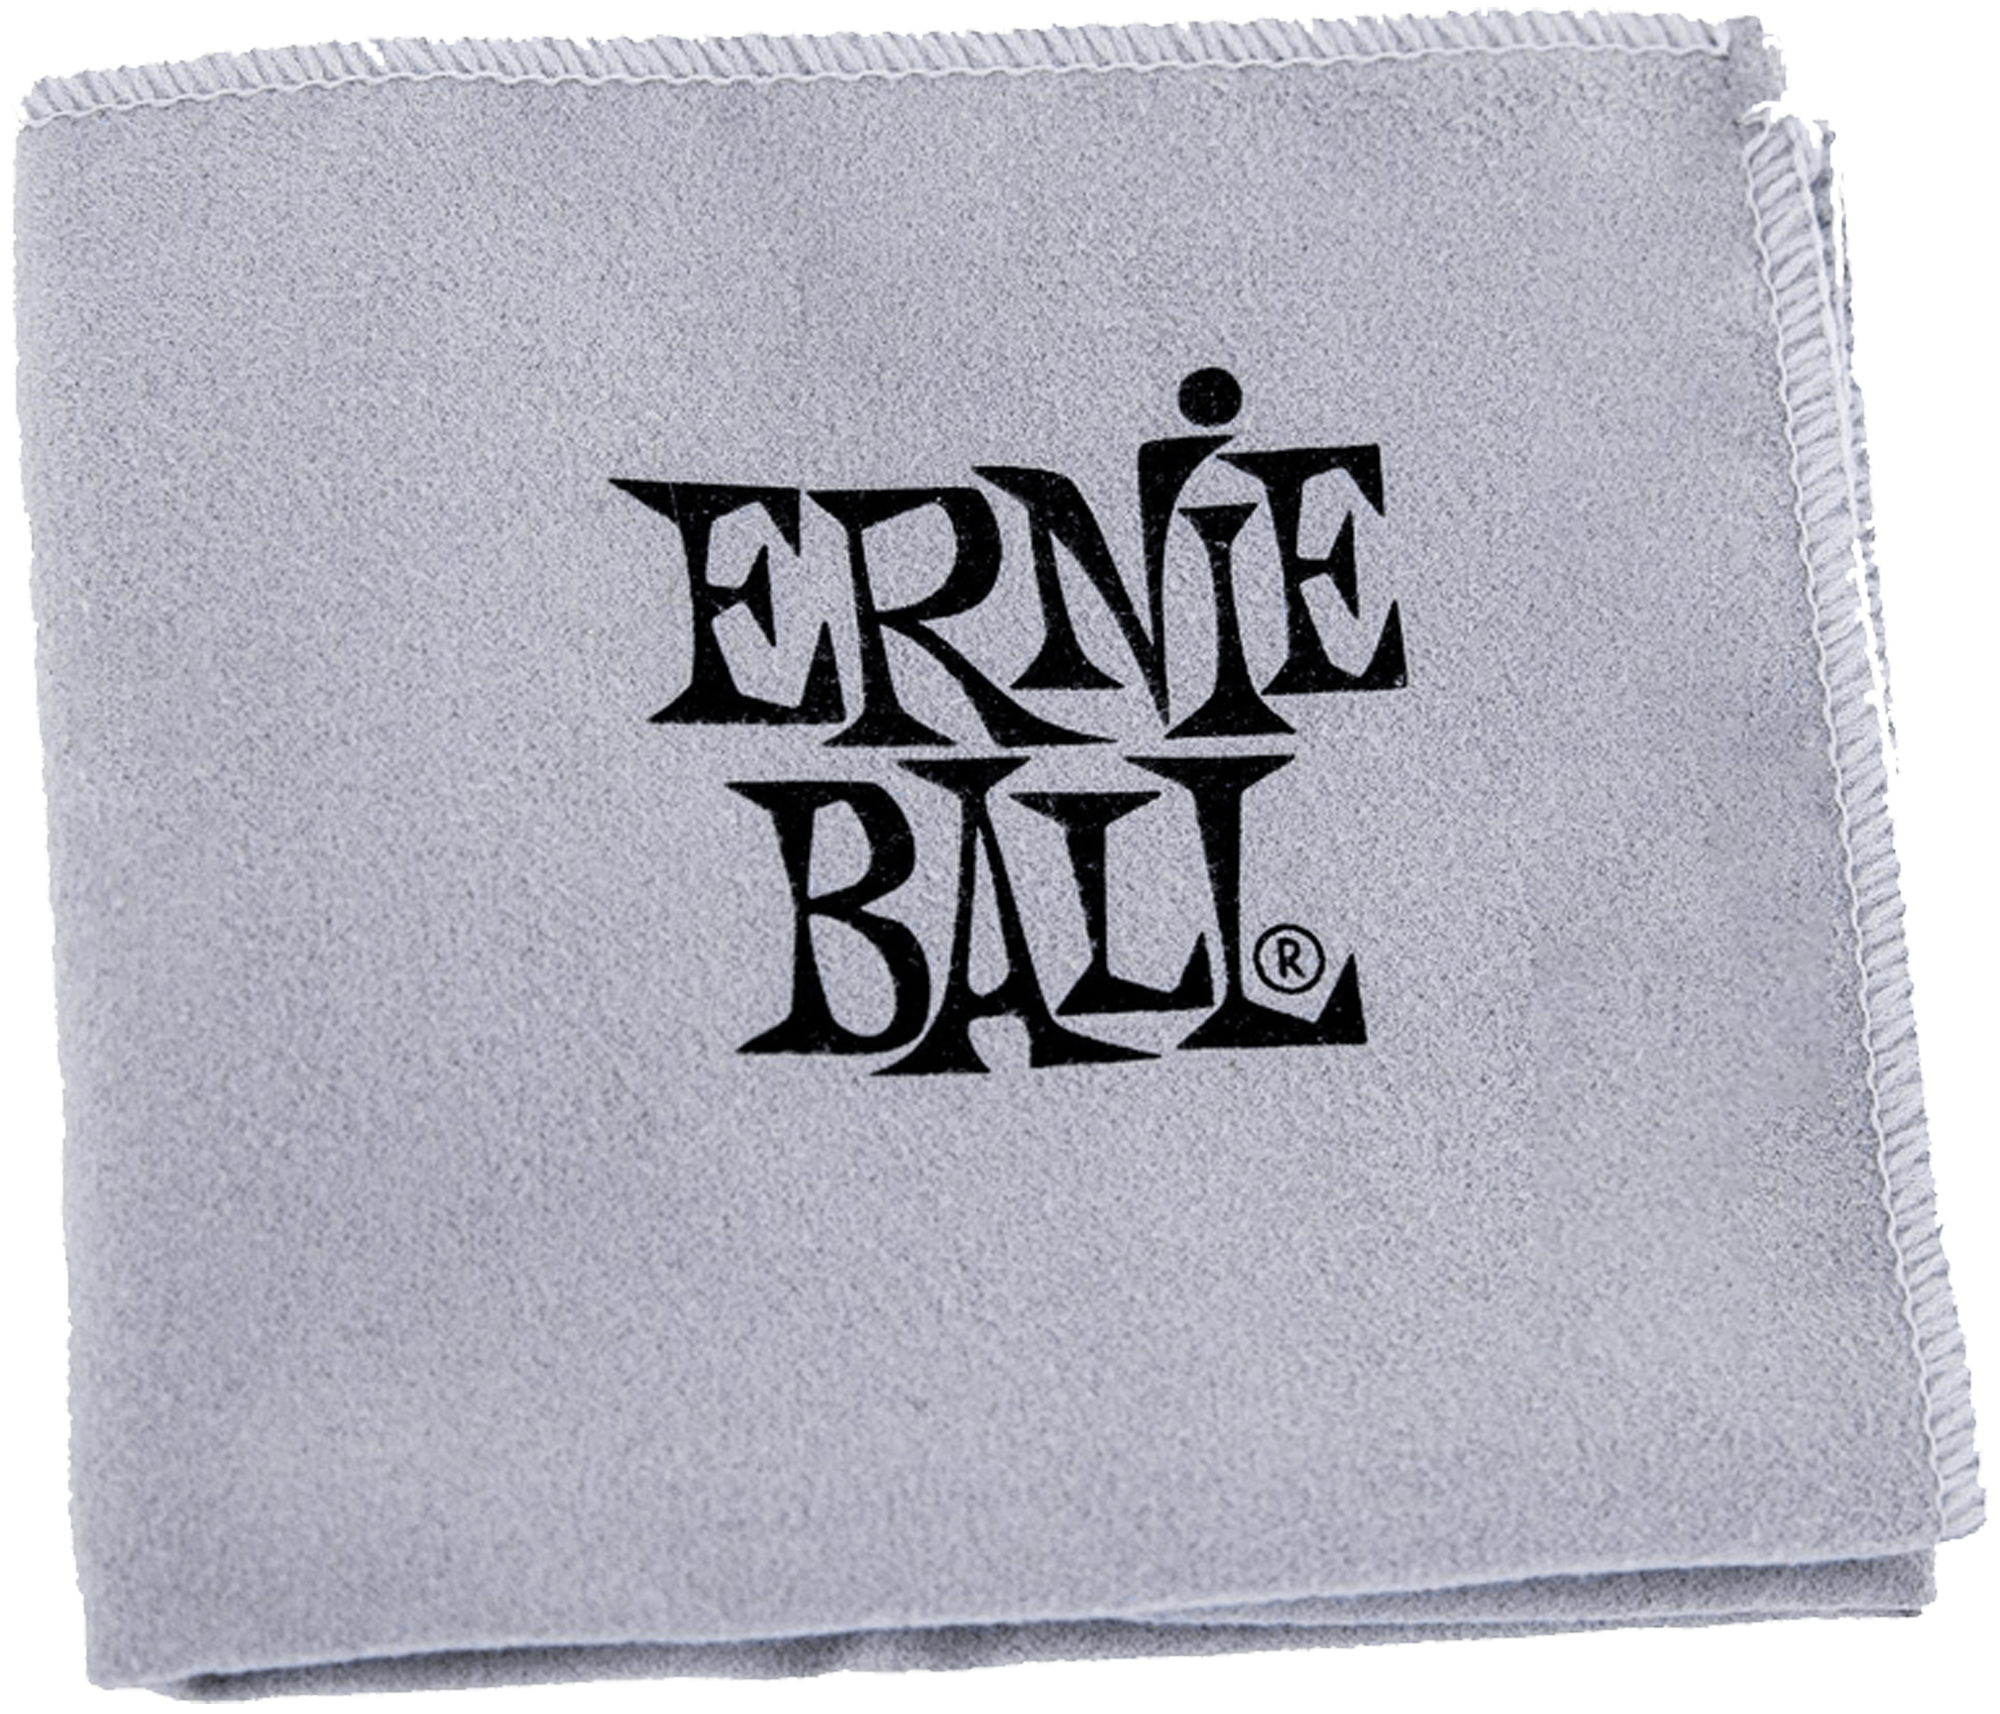 Ernie Ball Poliertuch, grau mit Logo